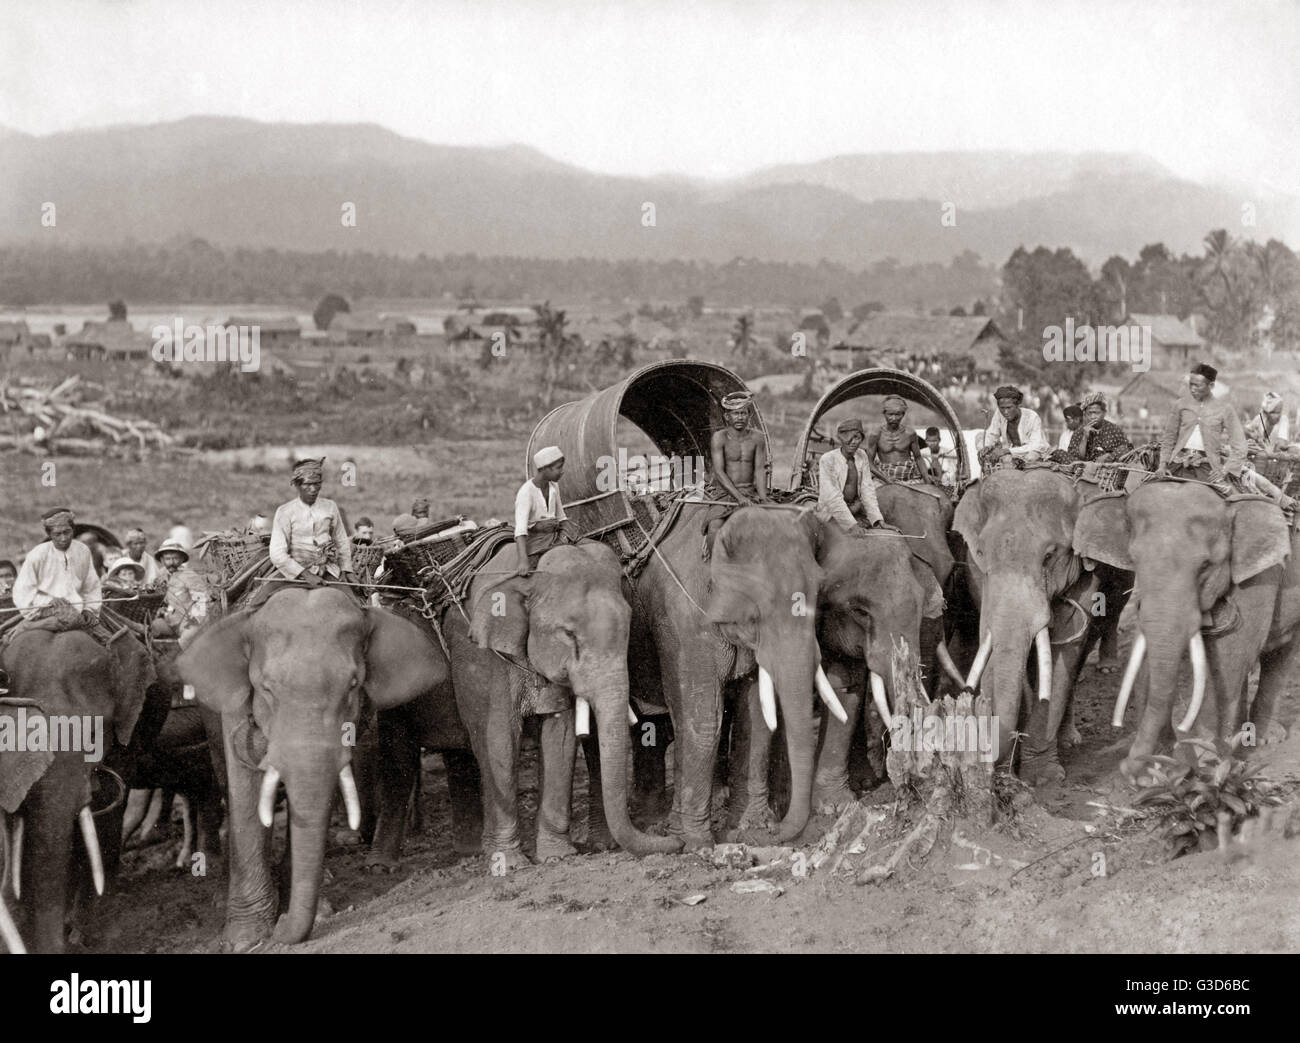 Les éléphants qui travaillent, probablement la Birmanie, vers 1890 Banque D'Images